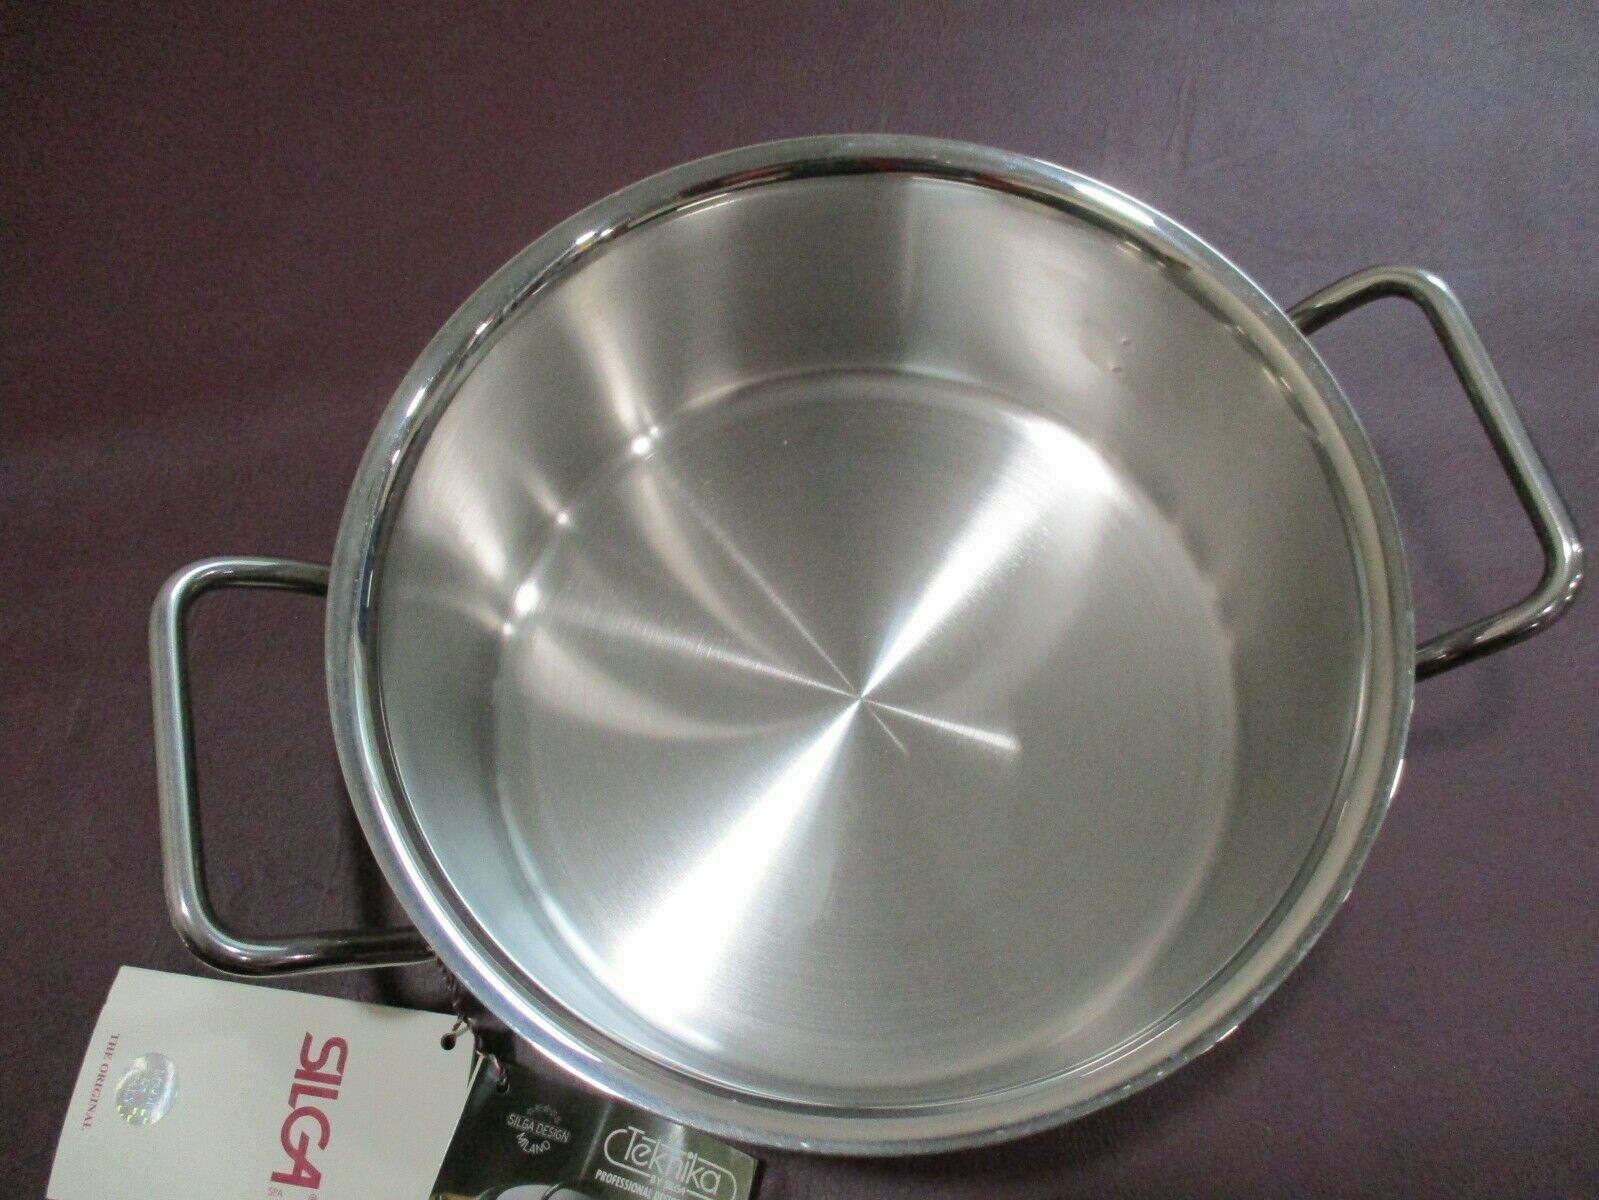 Nwt Silga Teknika 20cm Low Casserole w/Lid Stainless Steel Pot 3.15Qt